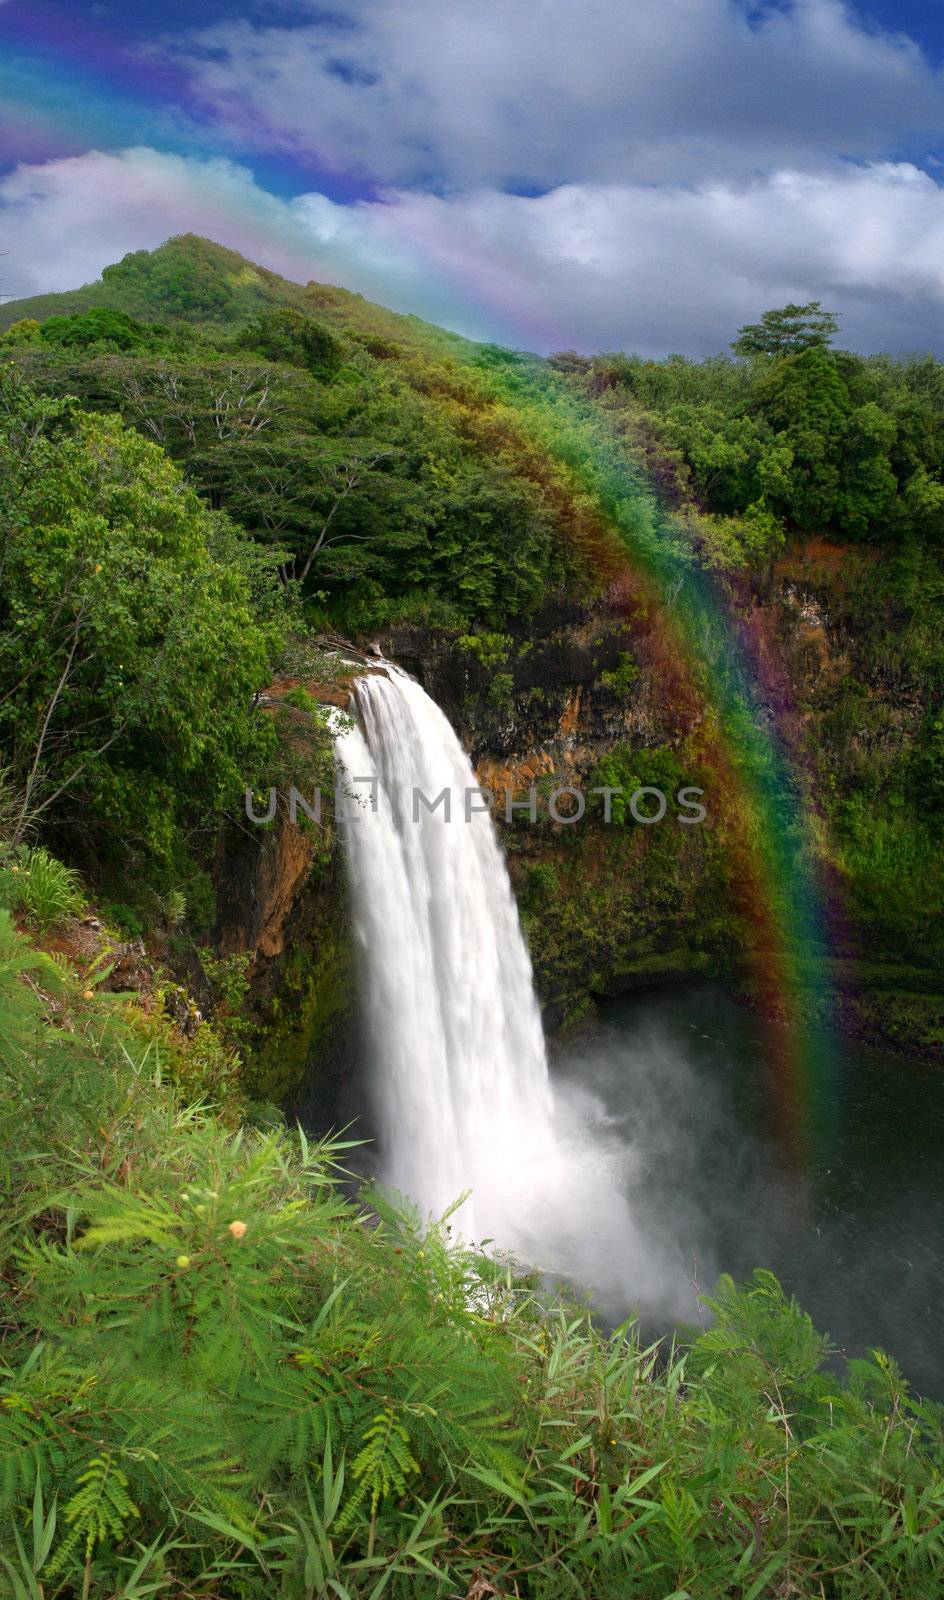 Waterfall in Kauai Hawaii With Rainbow by tobkatrina